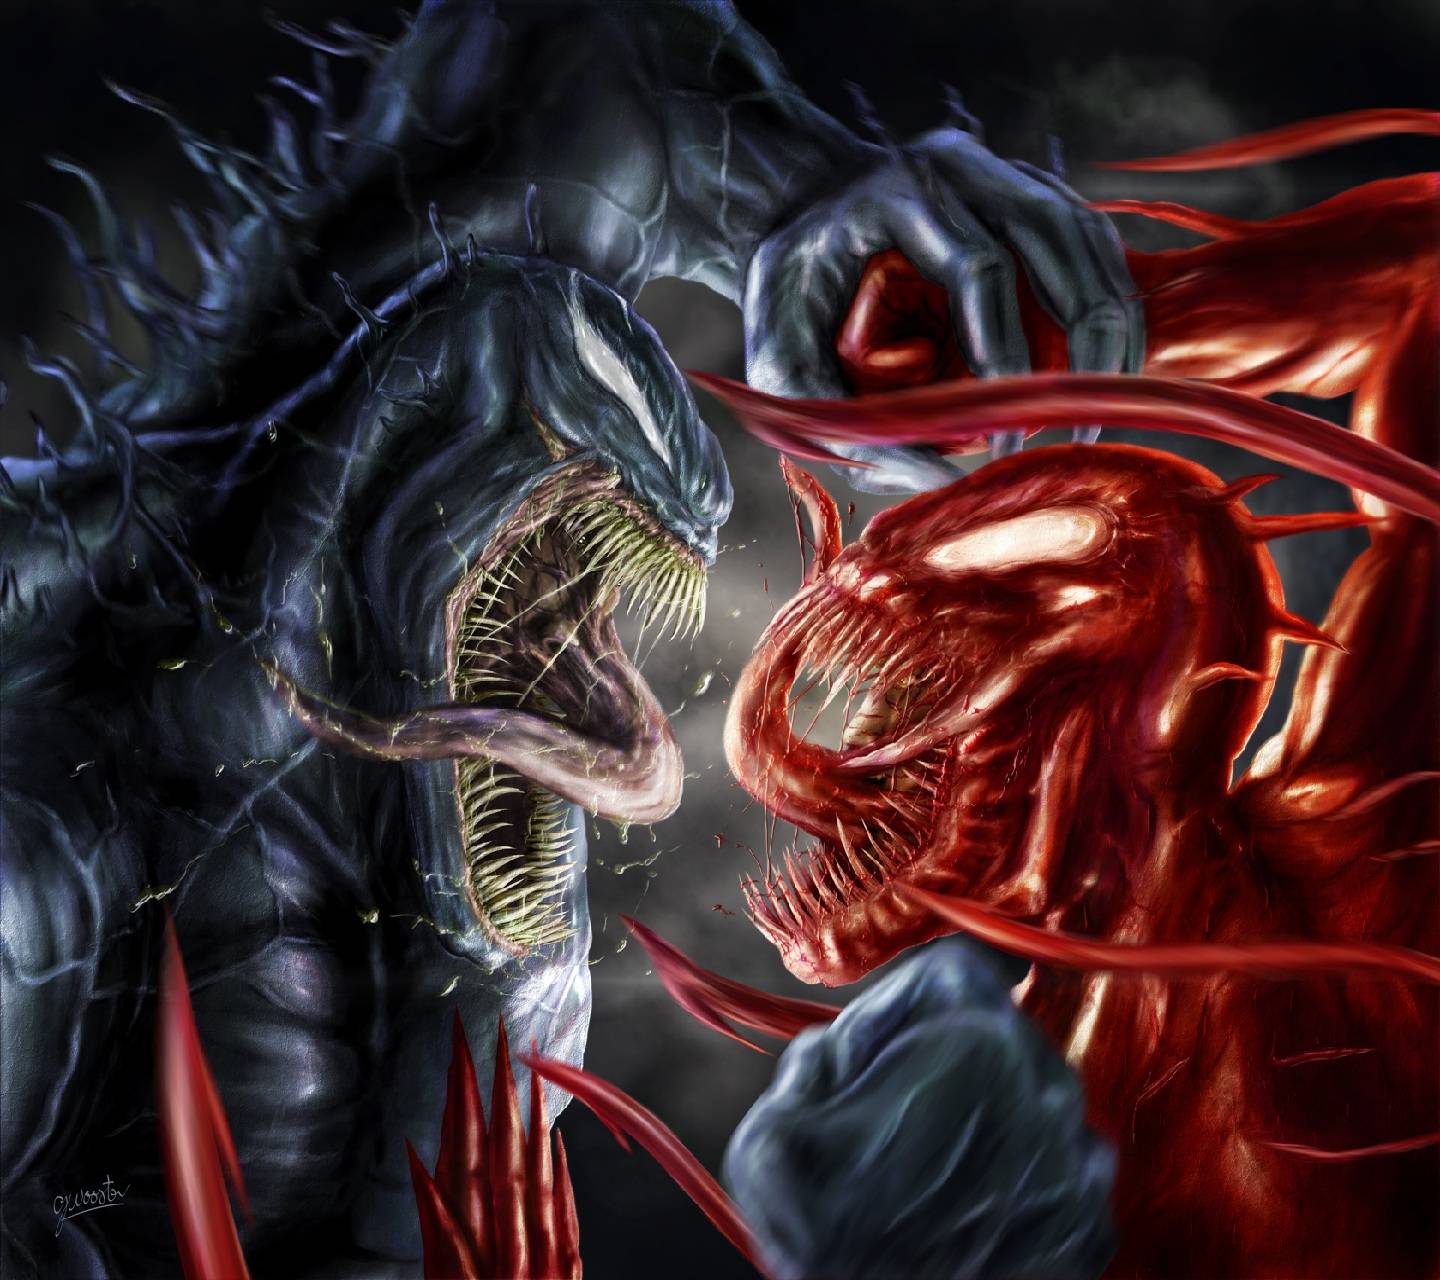 Venom vs Carnage Wallpaper Free Venom vs Carnage Background